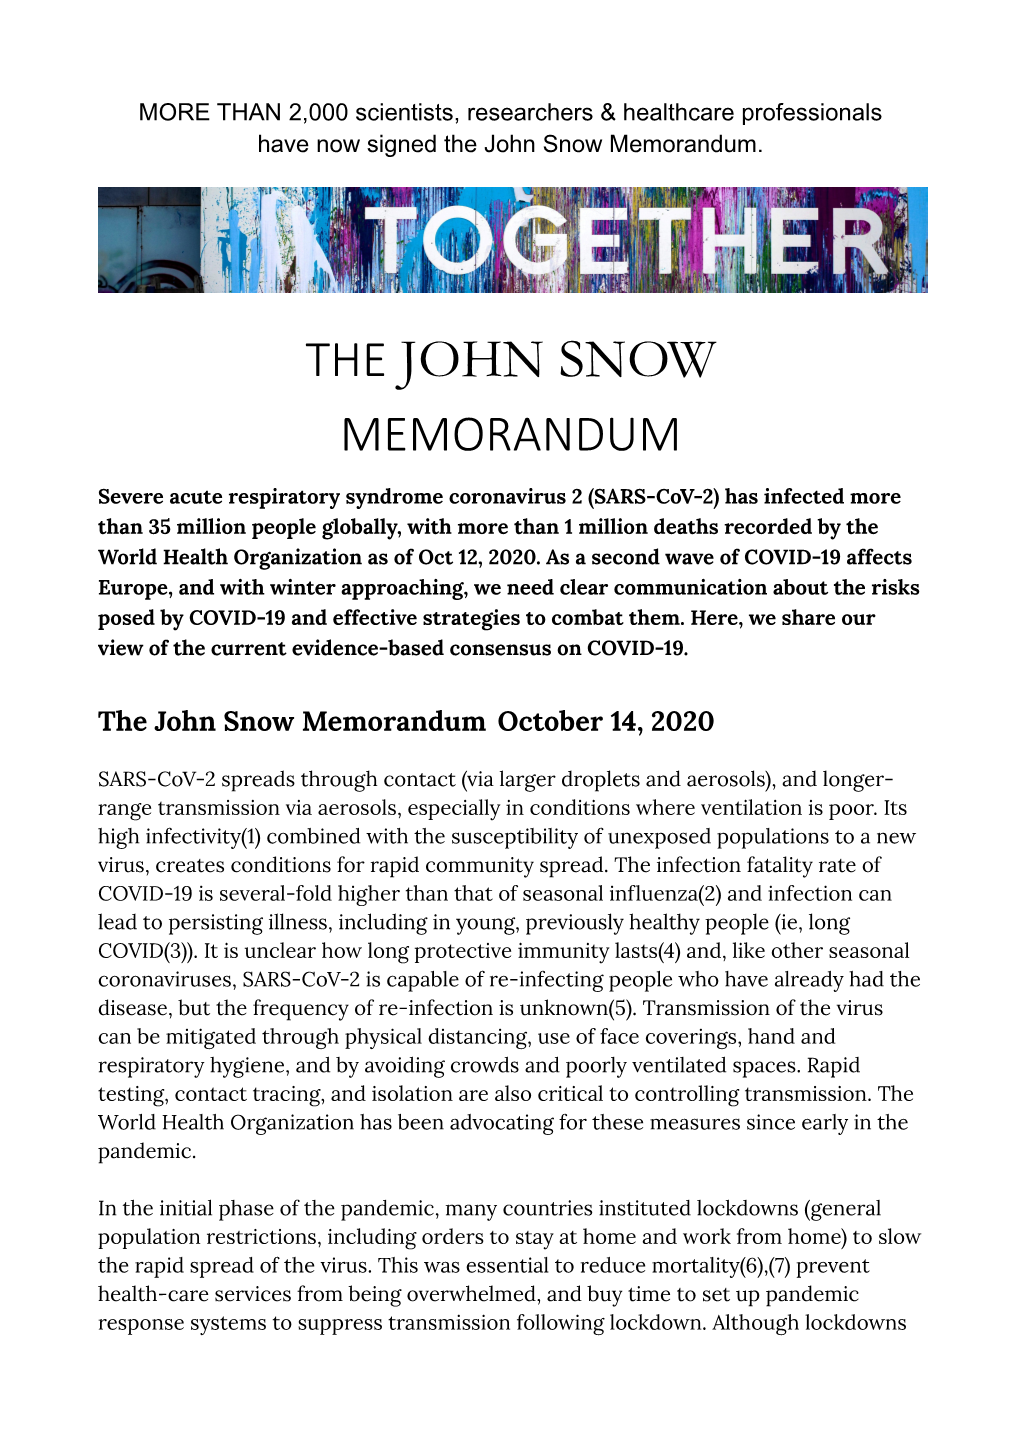 The John Snow Memorandum (PDF)